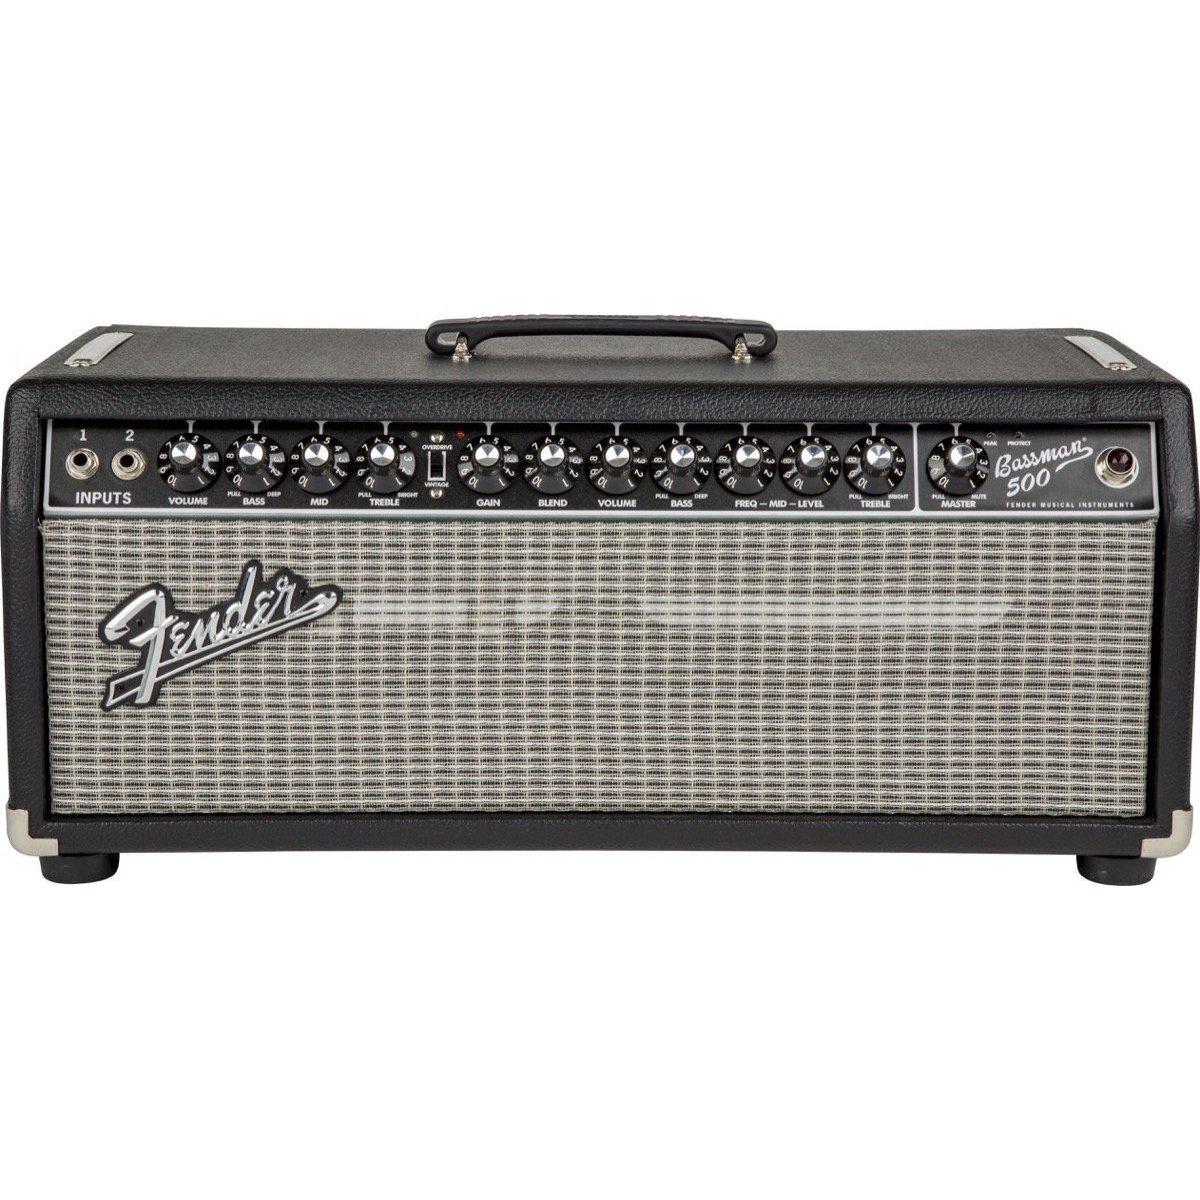 Amplifiers - Fender Bassman 800 Head